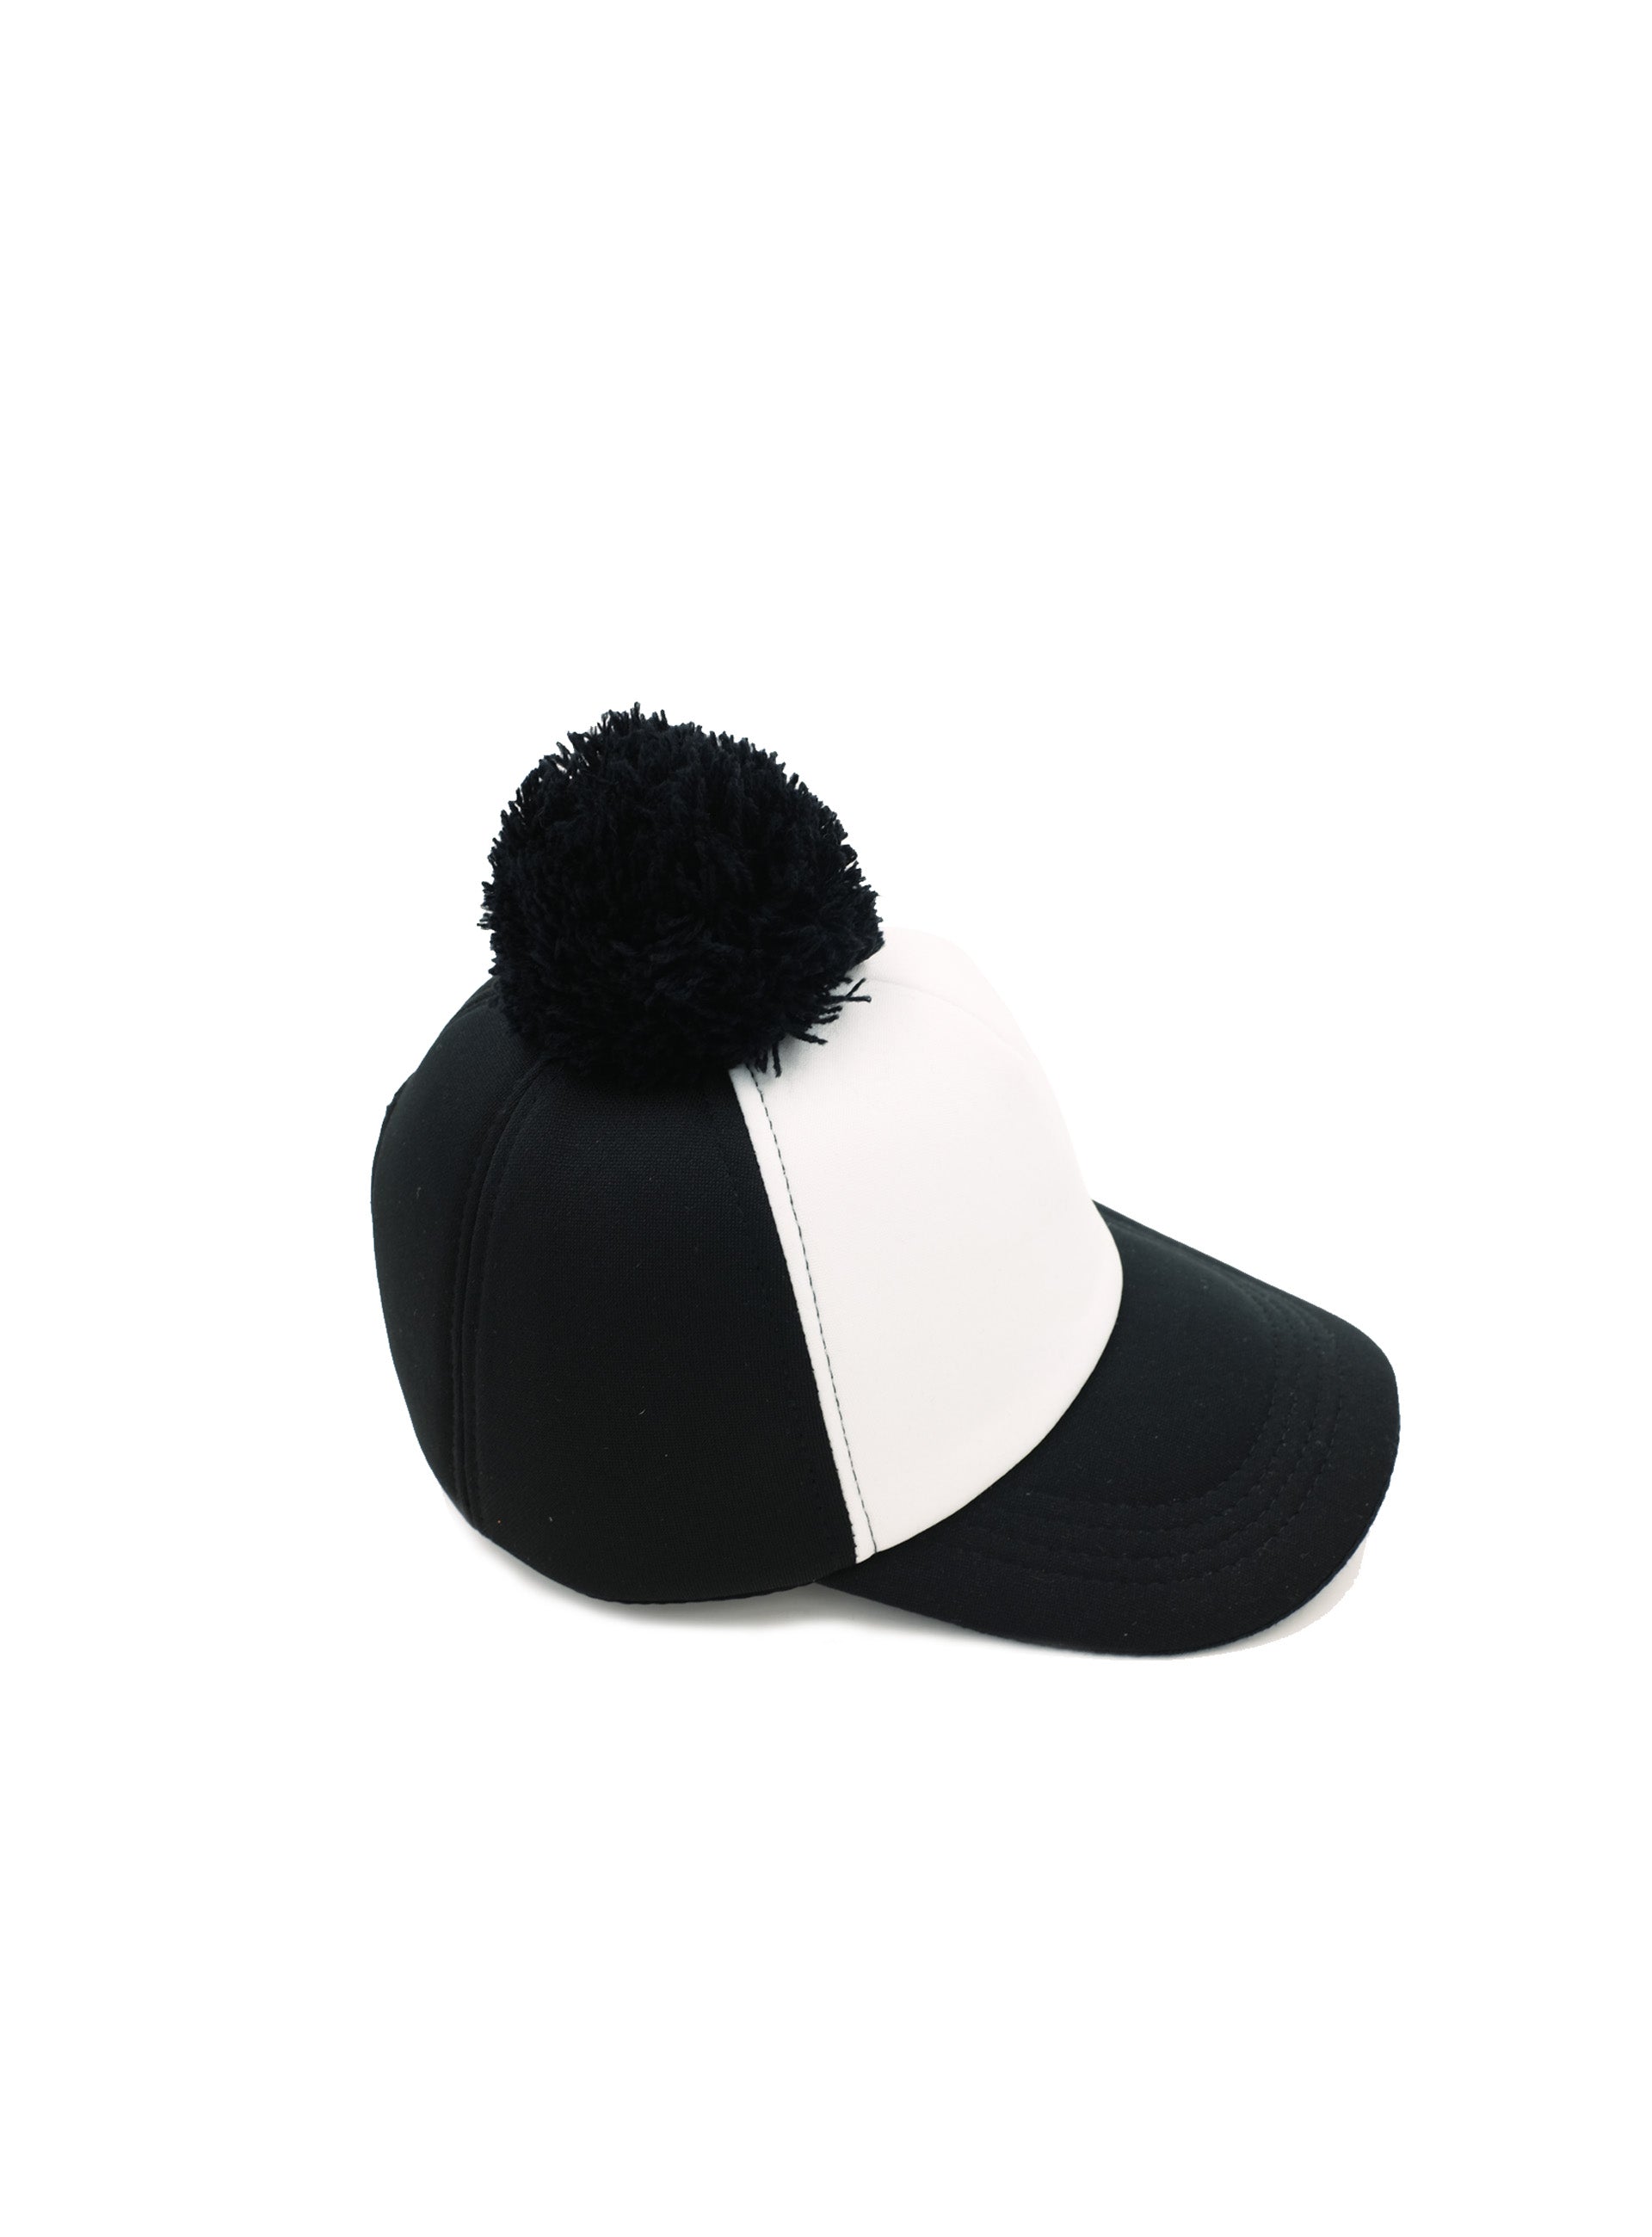 monochrome cap with black pom